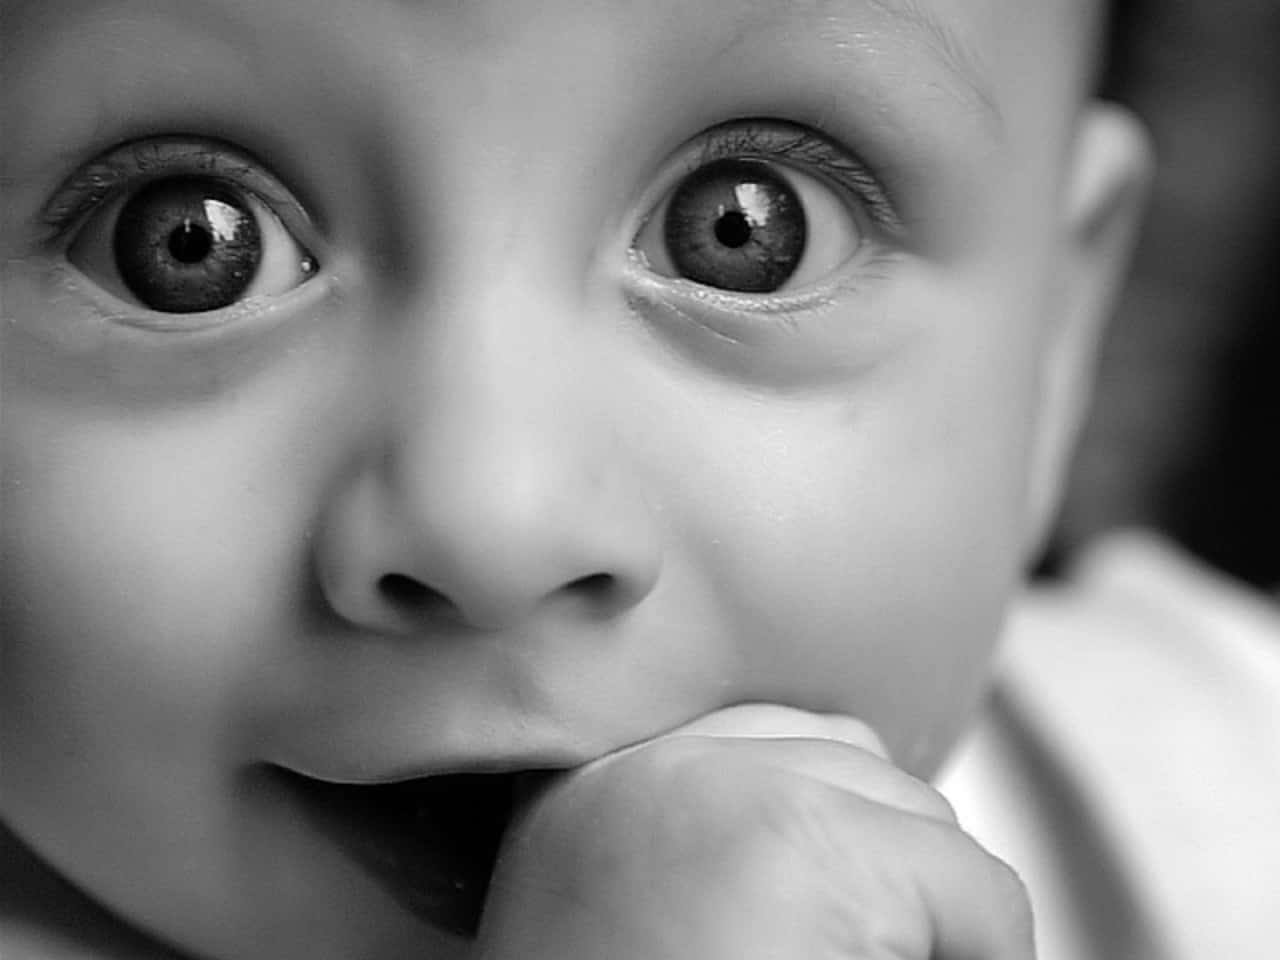 Etsort-hvidt Billede Af En Baby Med Åben Mund.